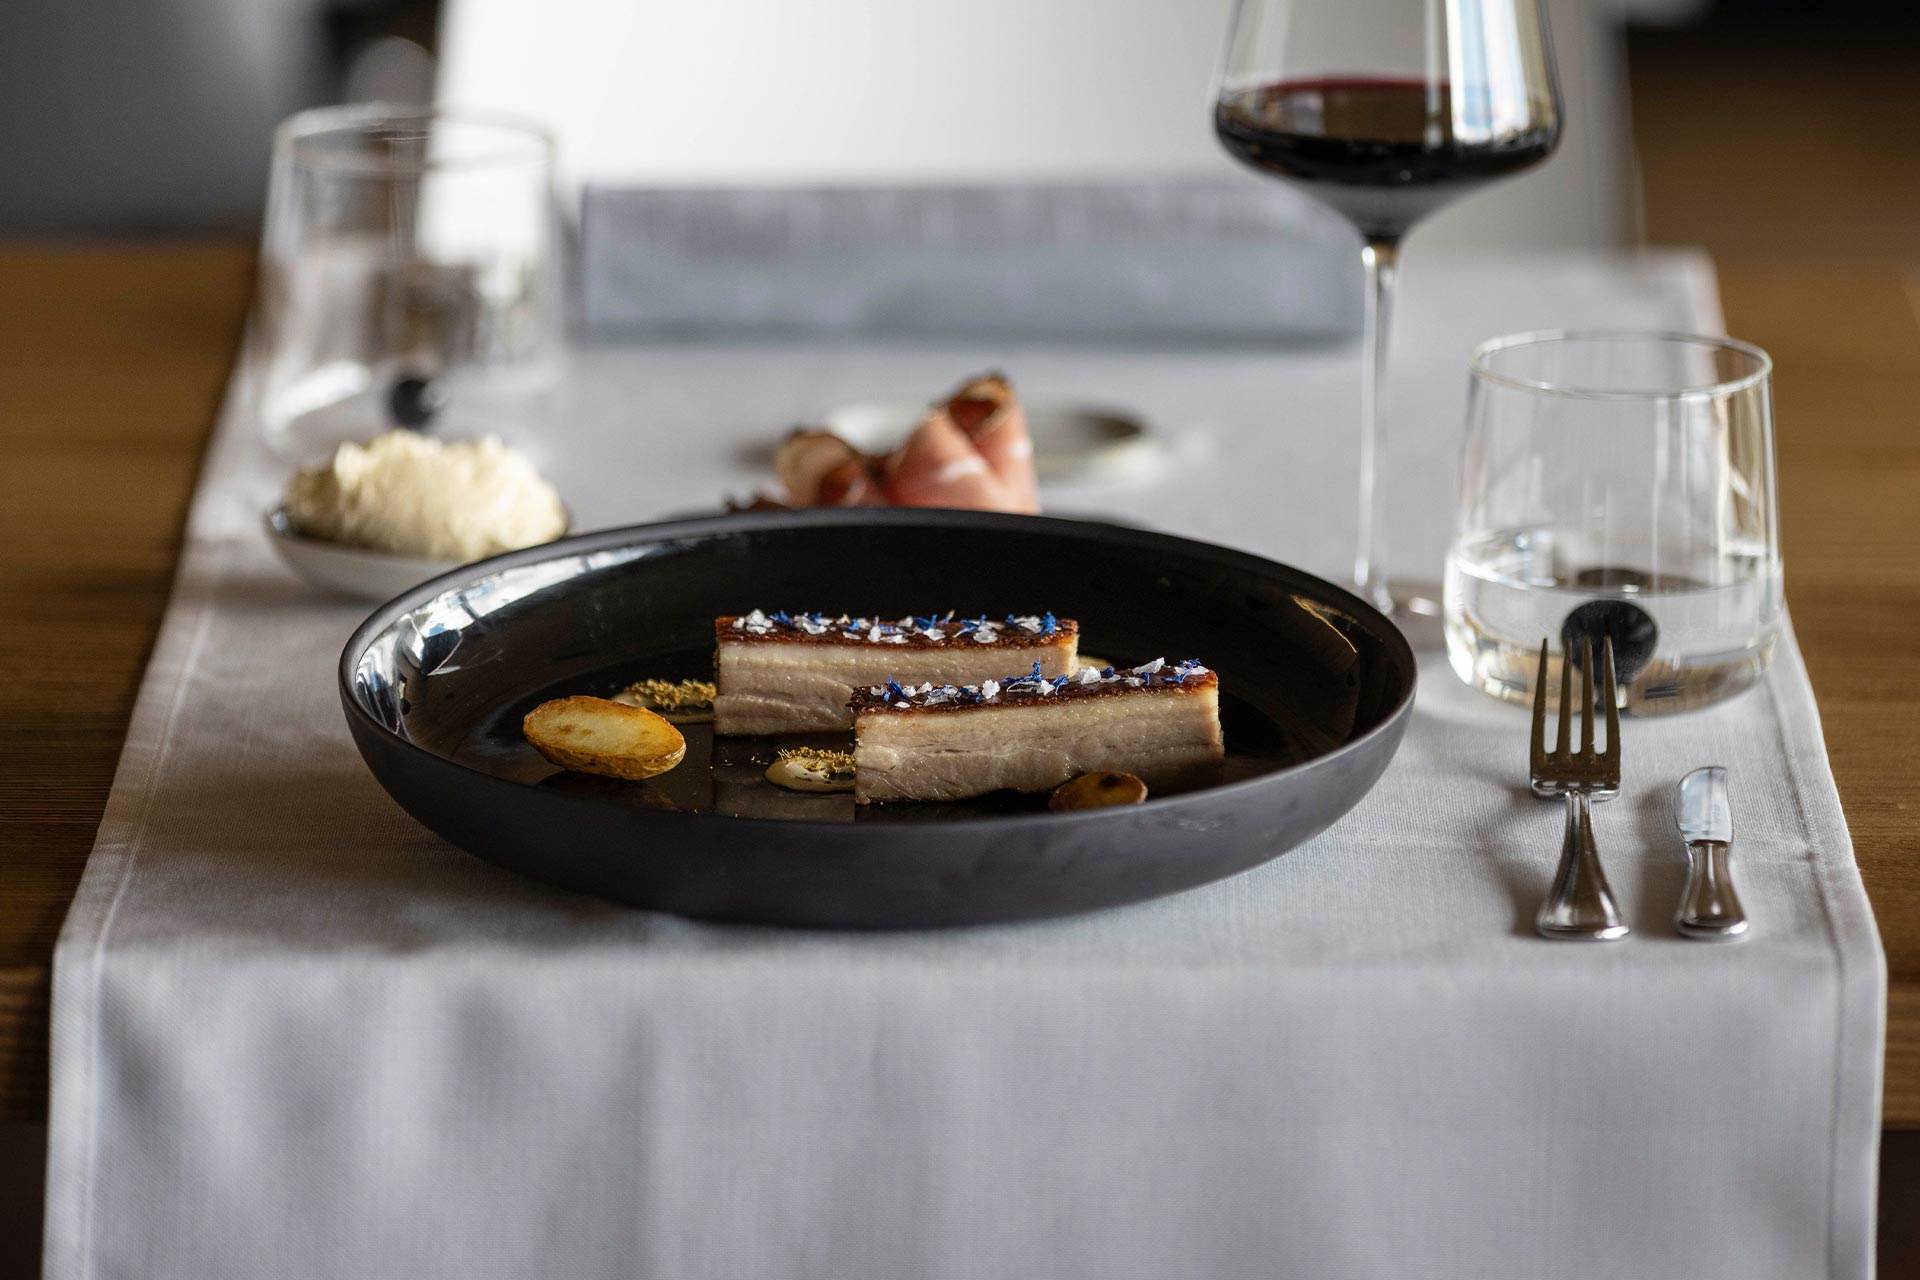 Gefüllte Tortelli garniert mit Parmesanflocken, begleitet von einem raffinierten Weißwein Hotel Ciasa de Munt in Alta Badia 